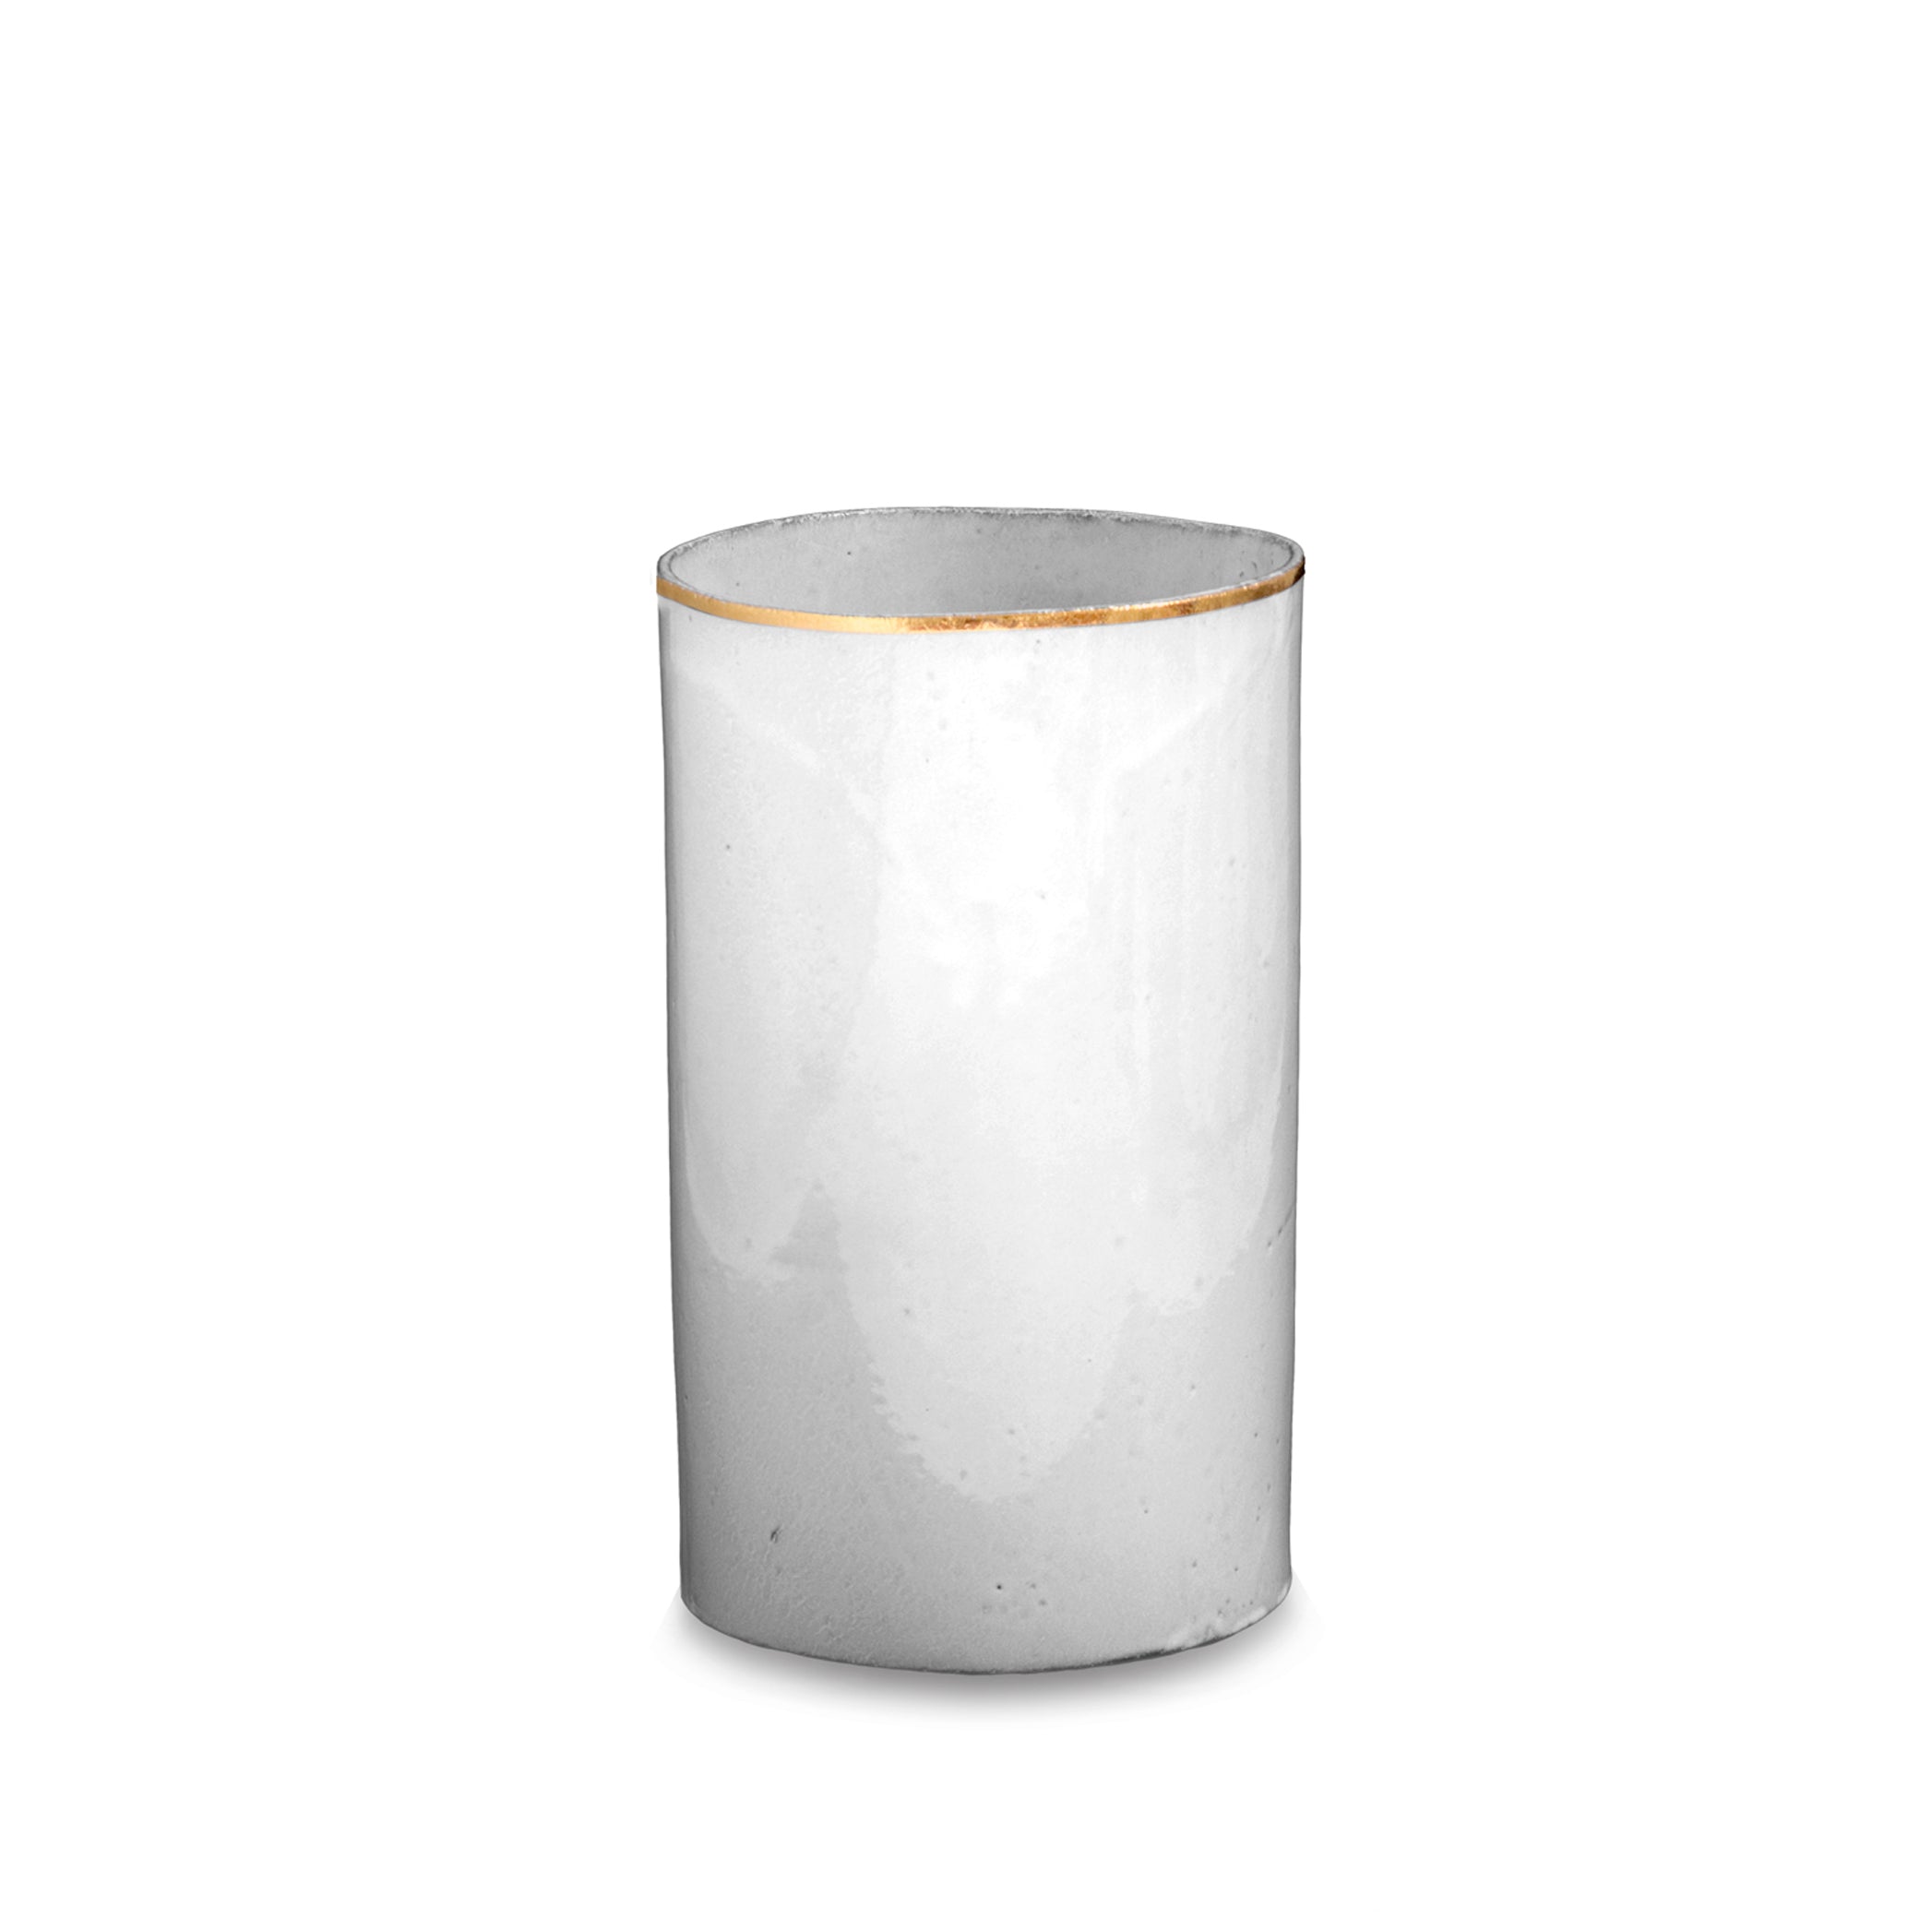 Crésus Tube Vase with Gold Rim by Astier de Villatte, 22cm